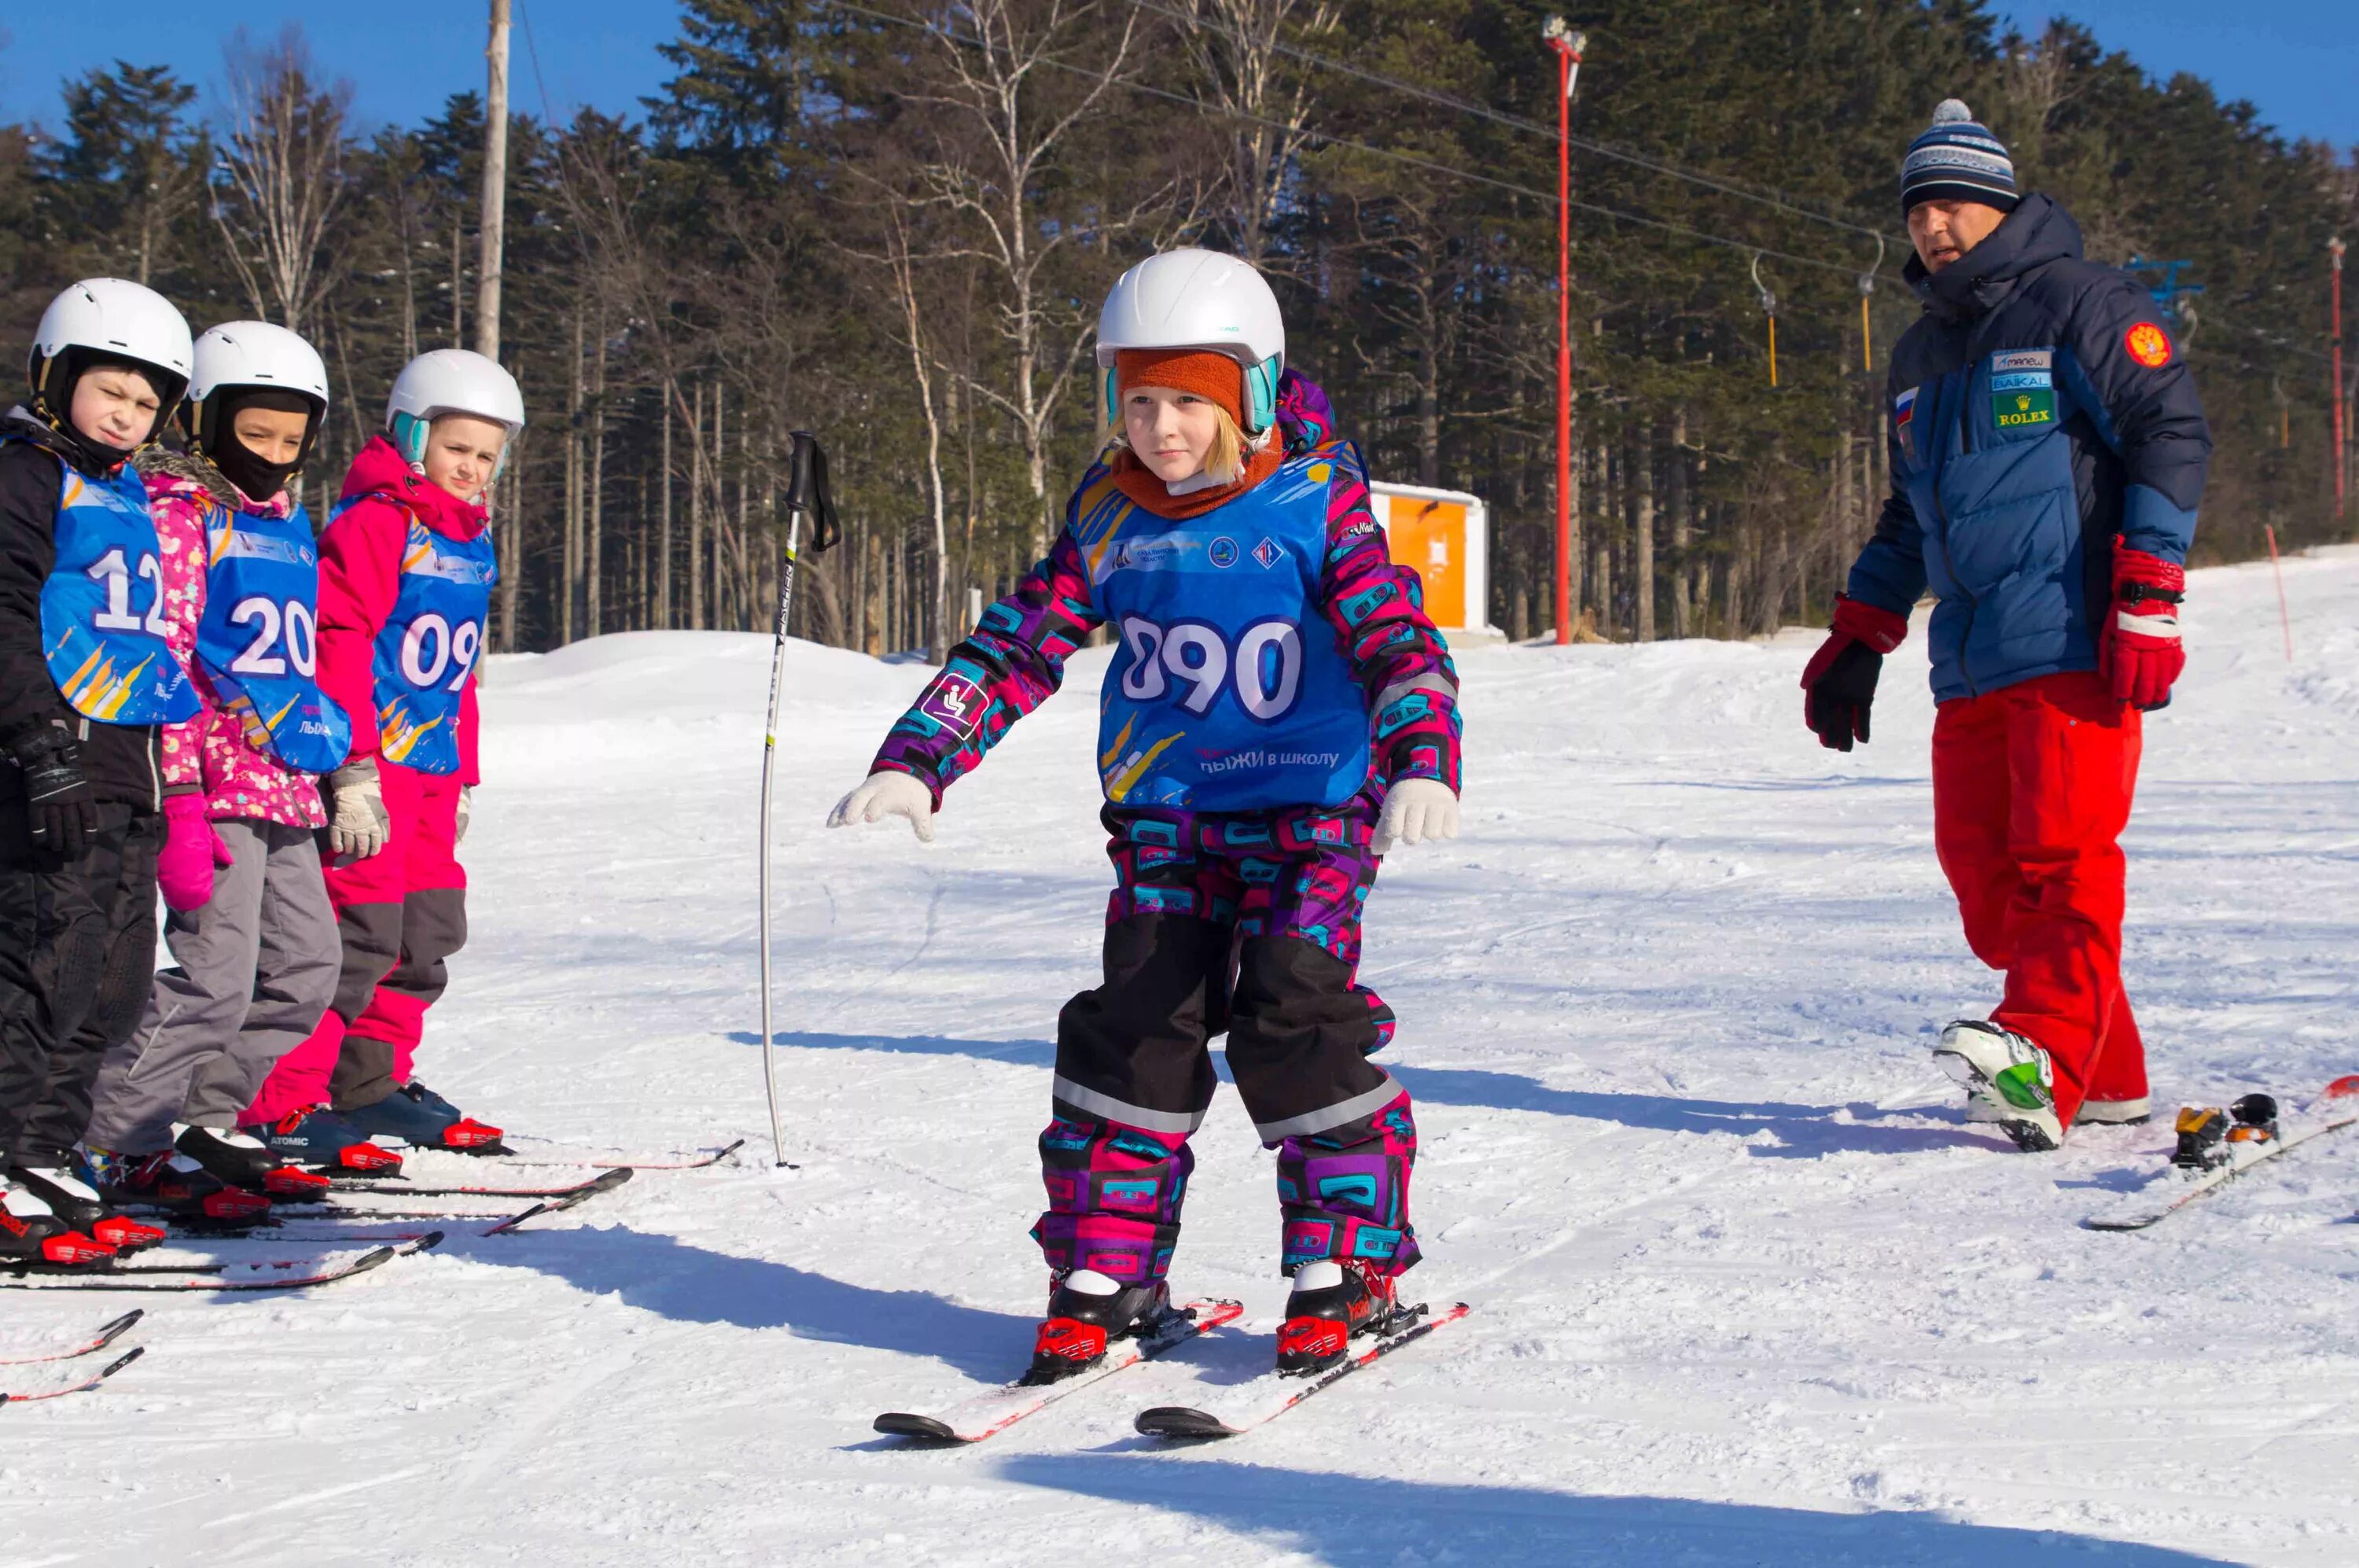 Лыжи в школе. Школьники на лыжах. Лыжный спорт в школе. Лыжная подготовка в школе. Лыжи ребенку в школу